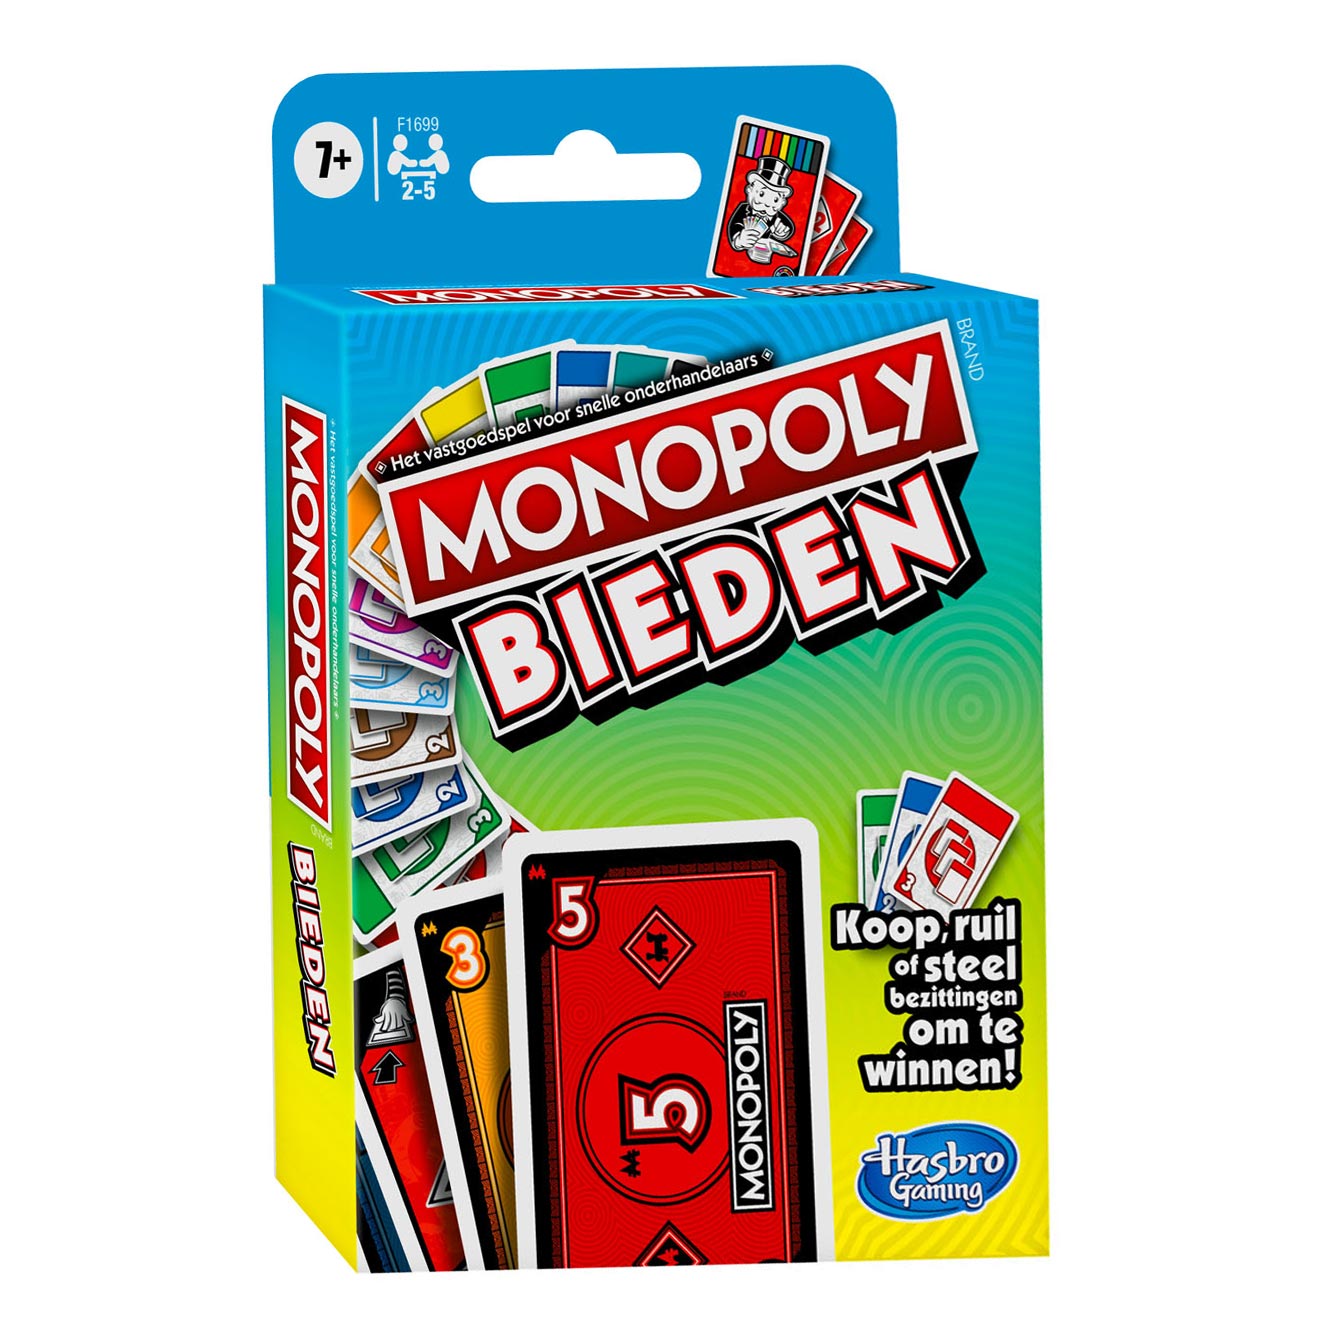 Monopoly Bidding | Thimble